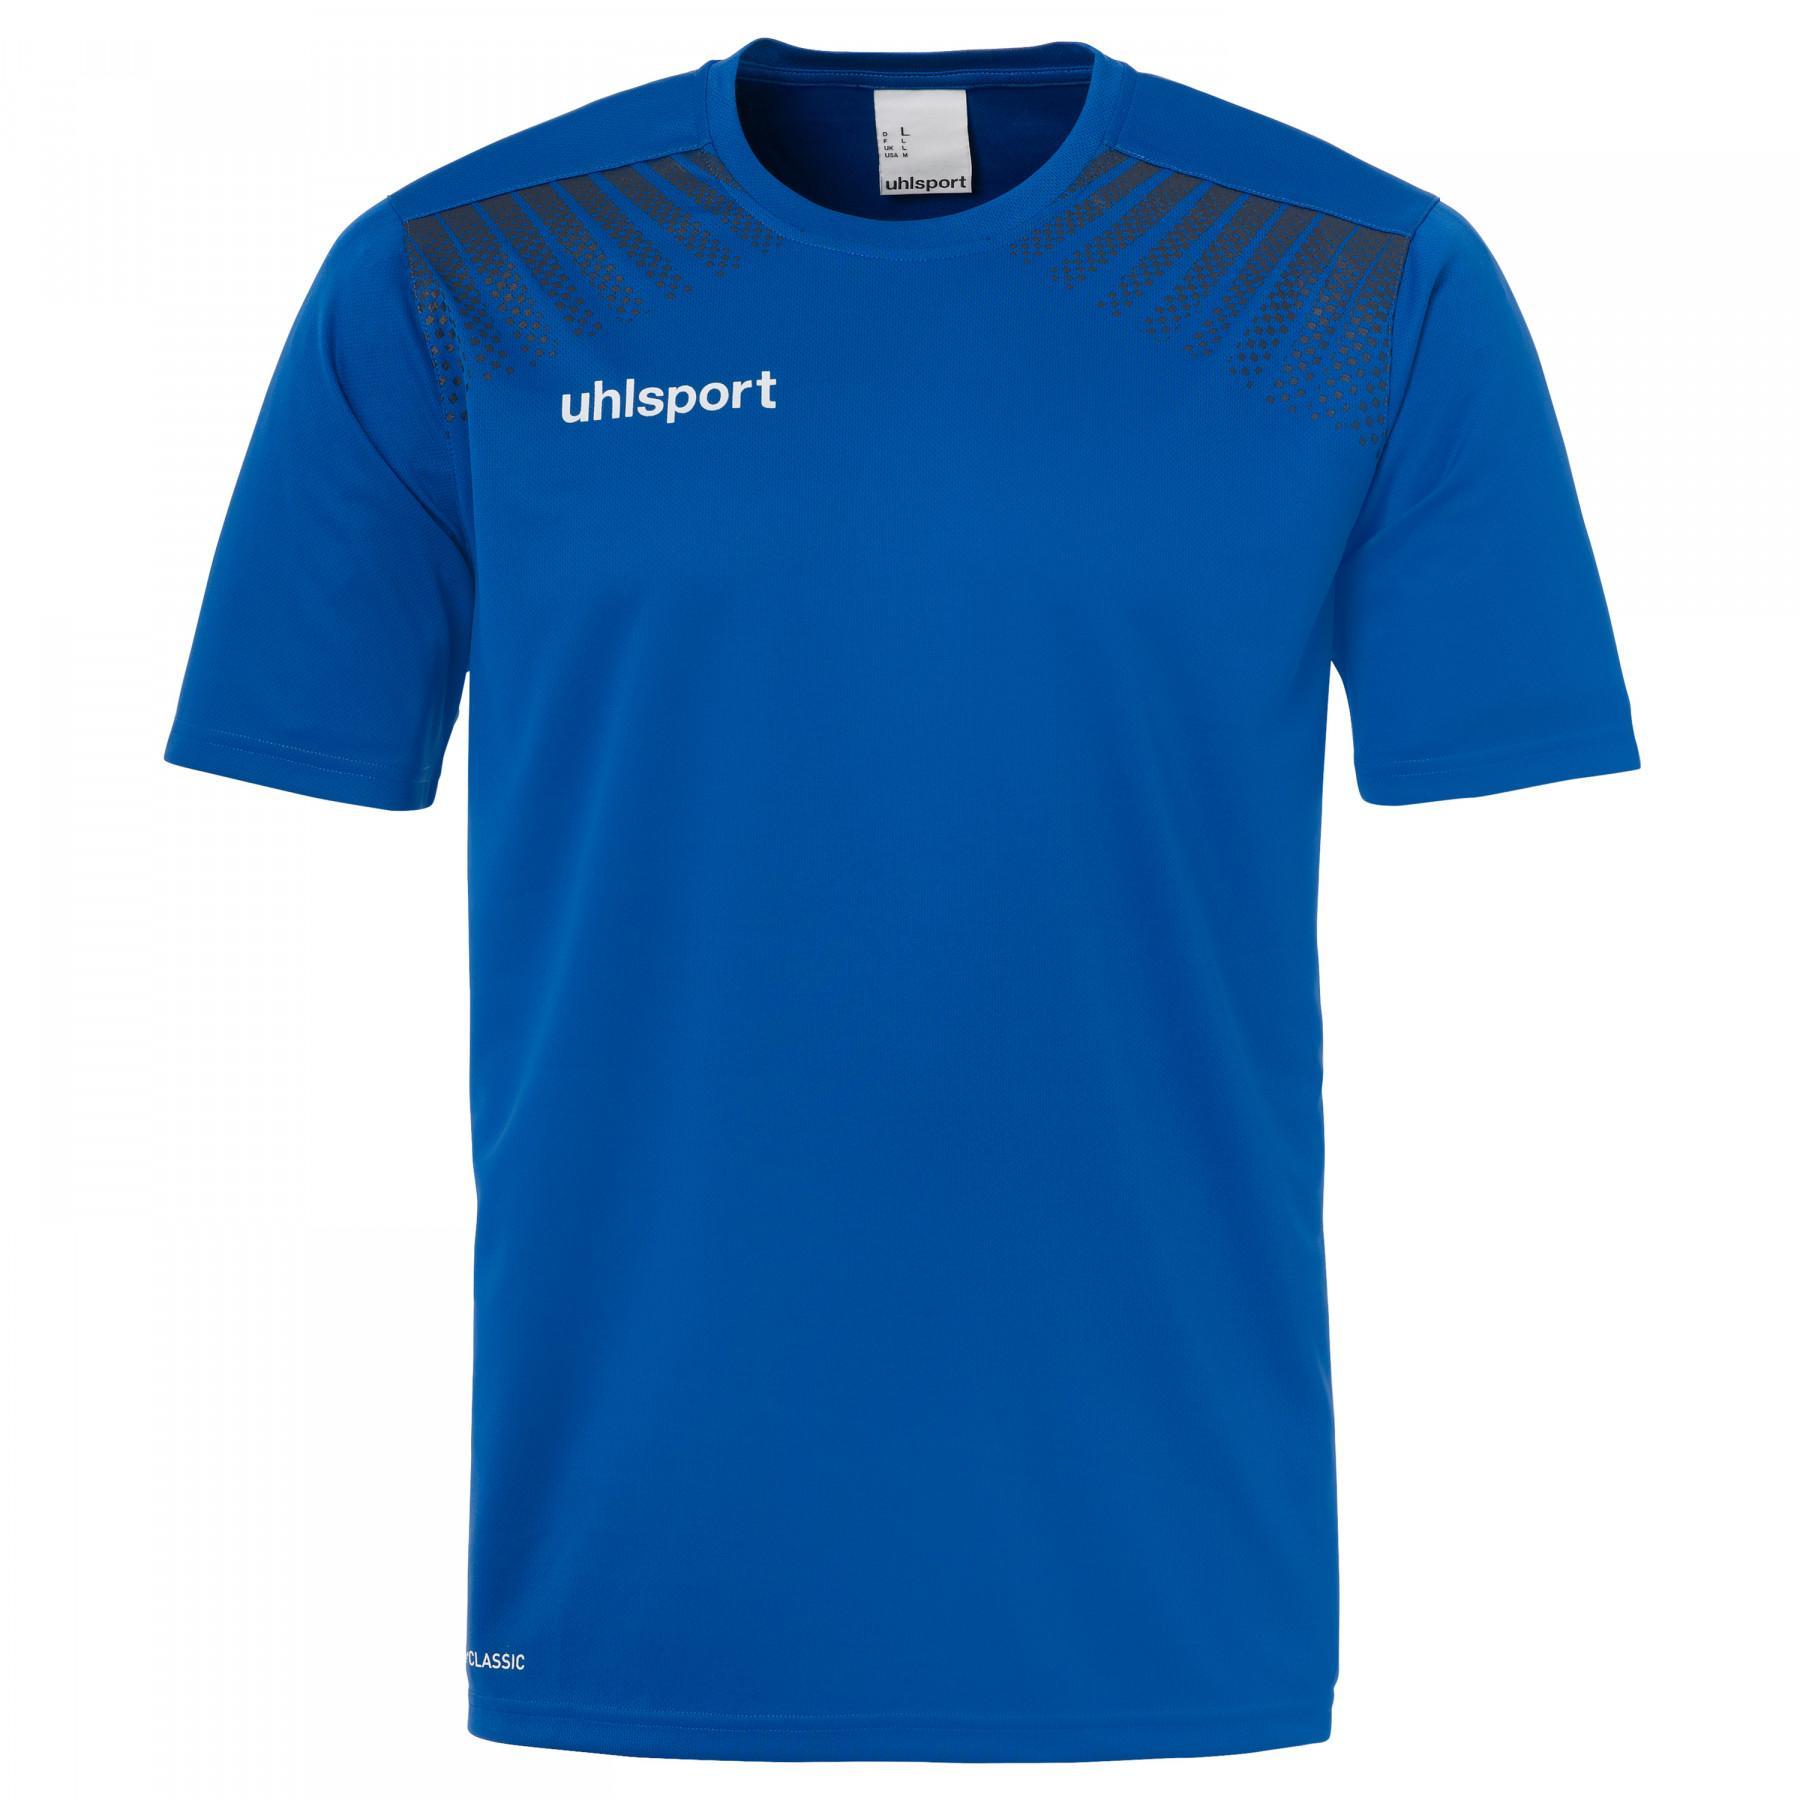 Kinder-T-shirt Uhlsport Goal